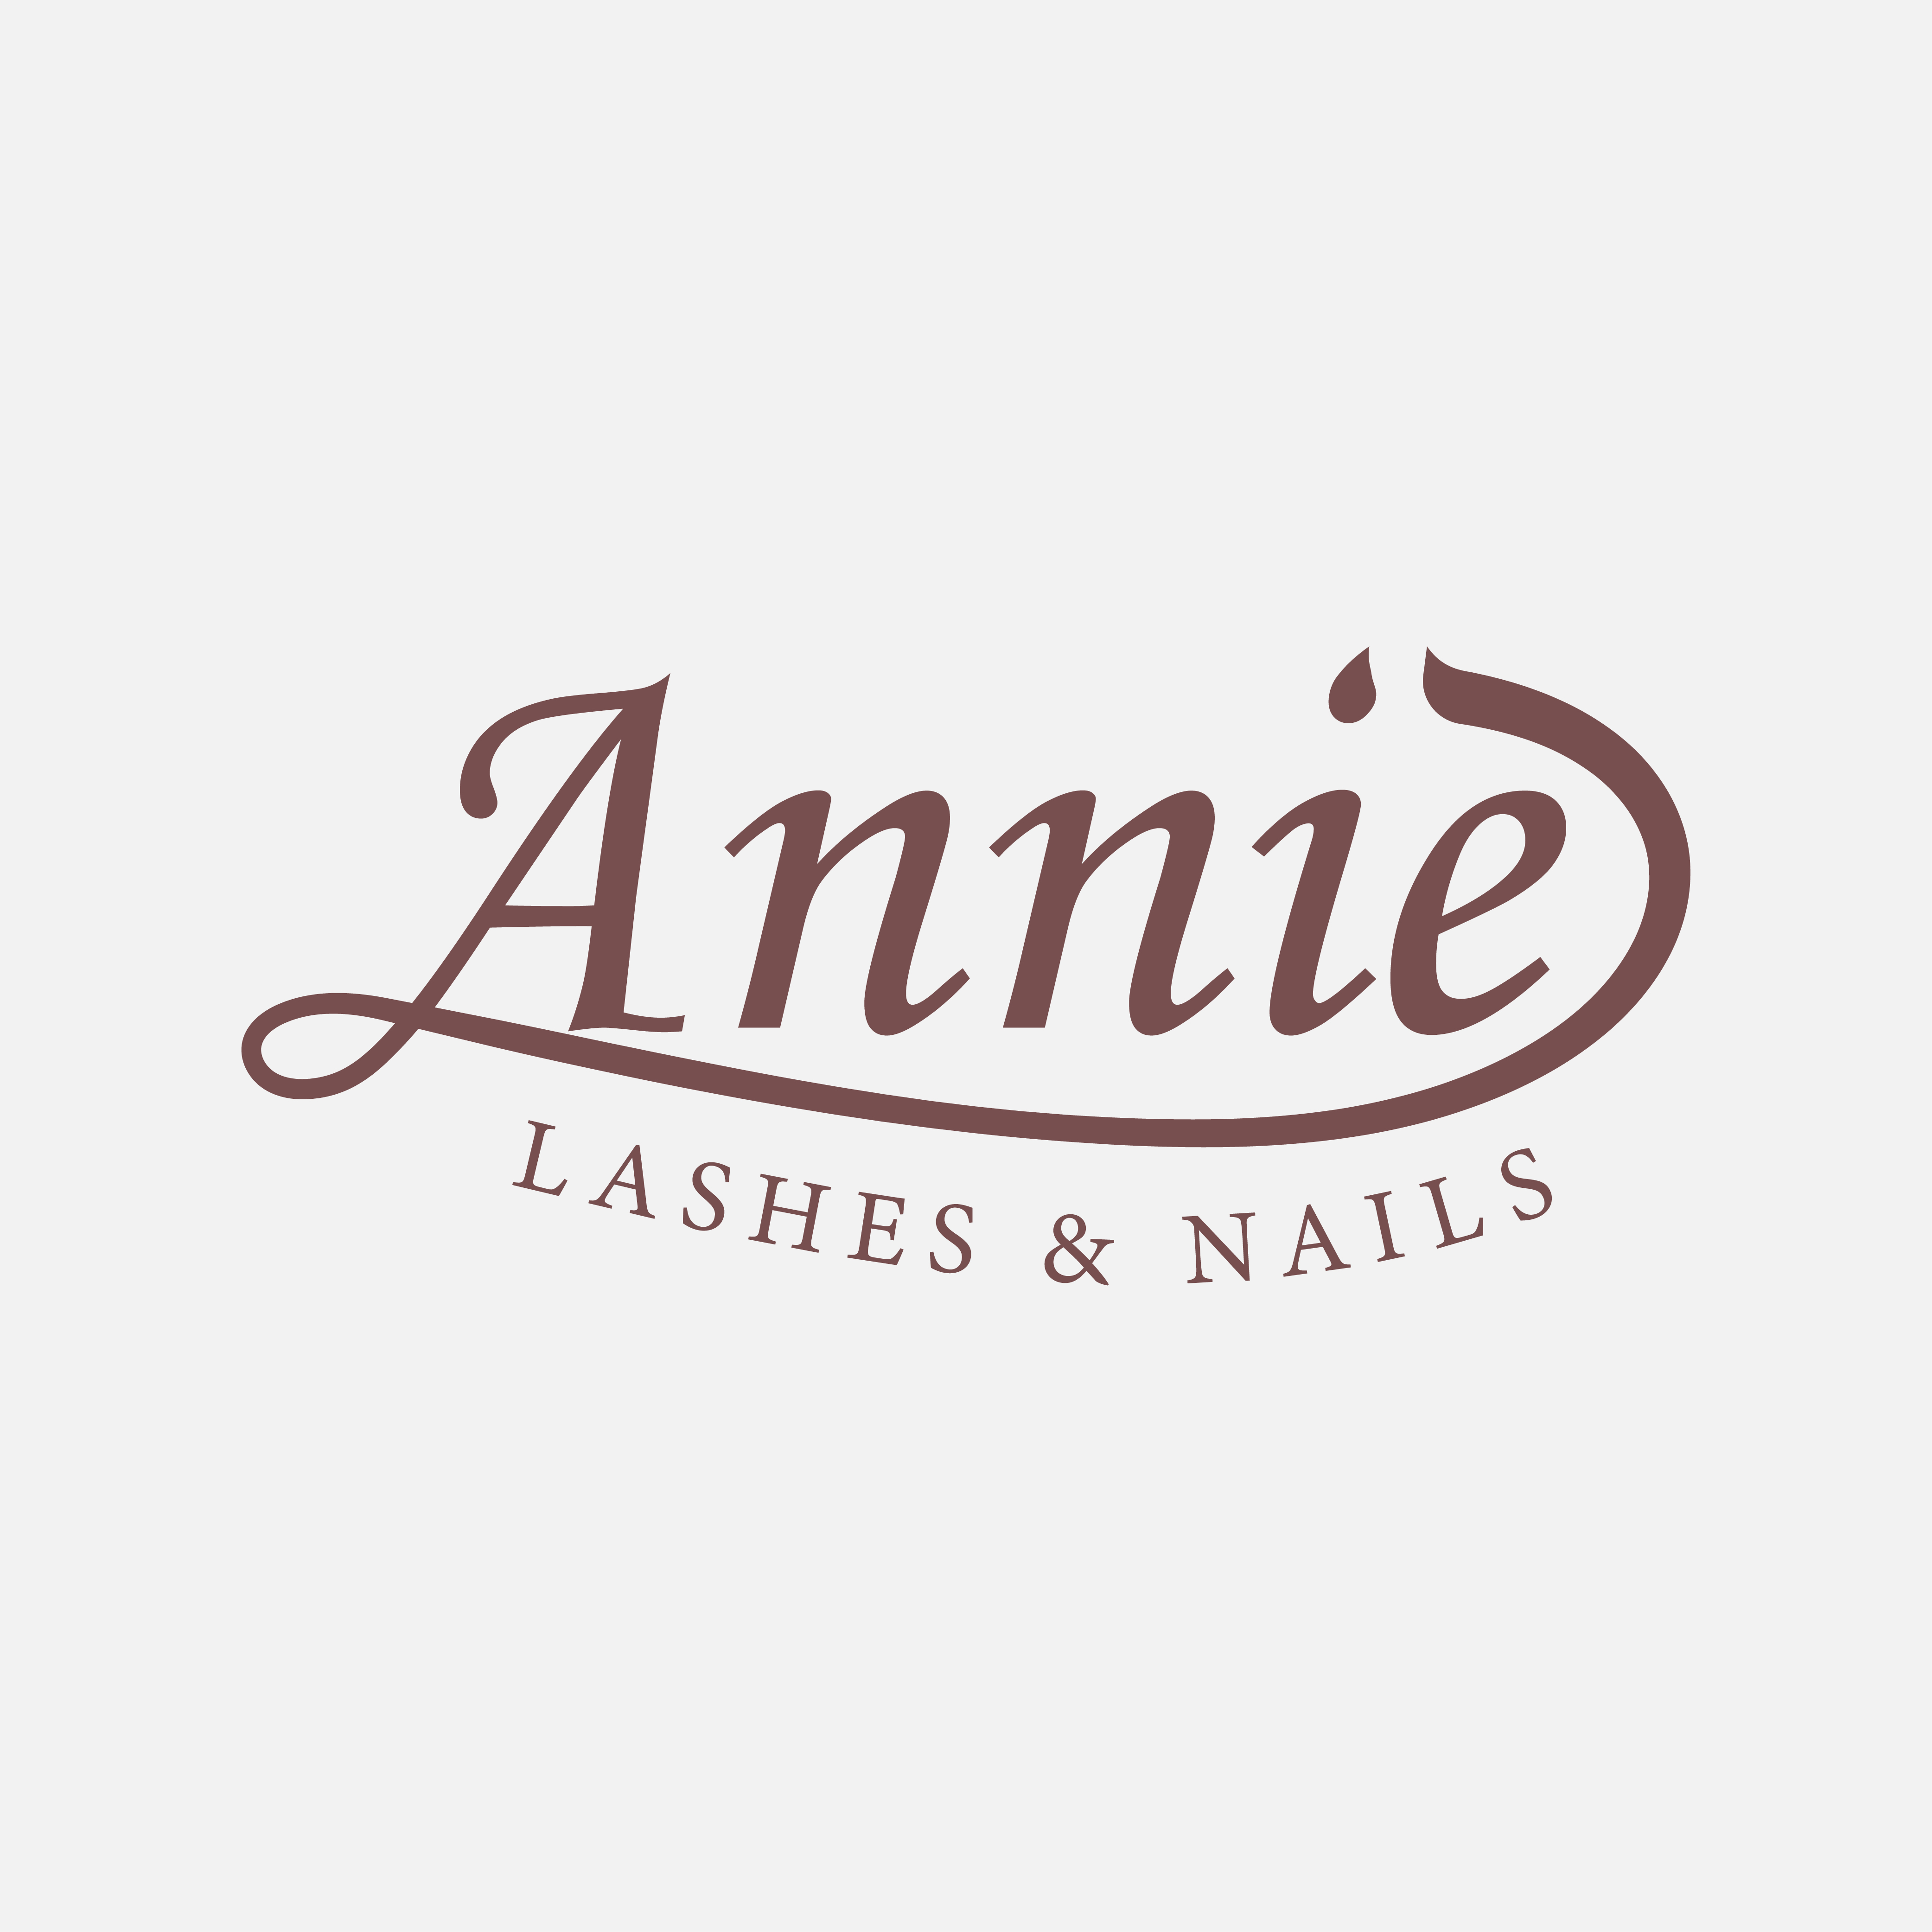 Annie Lashes & Nails